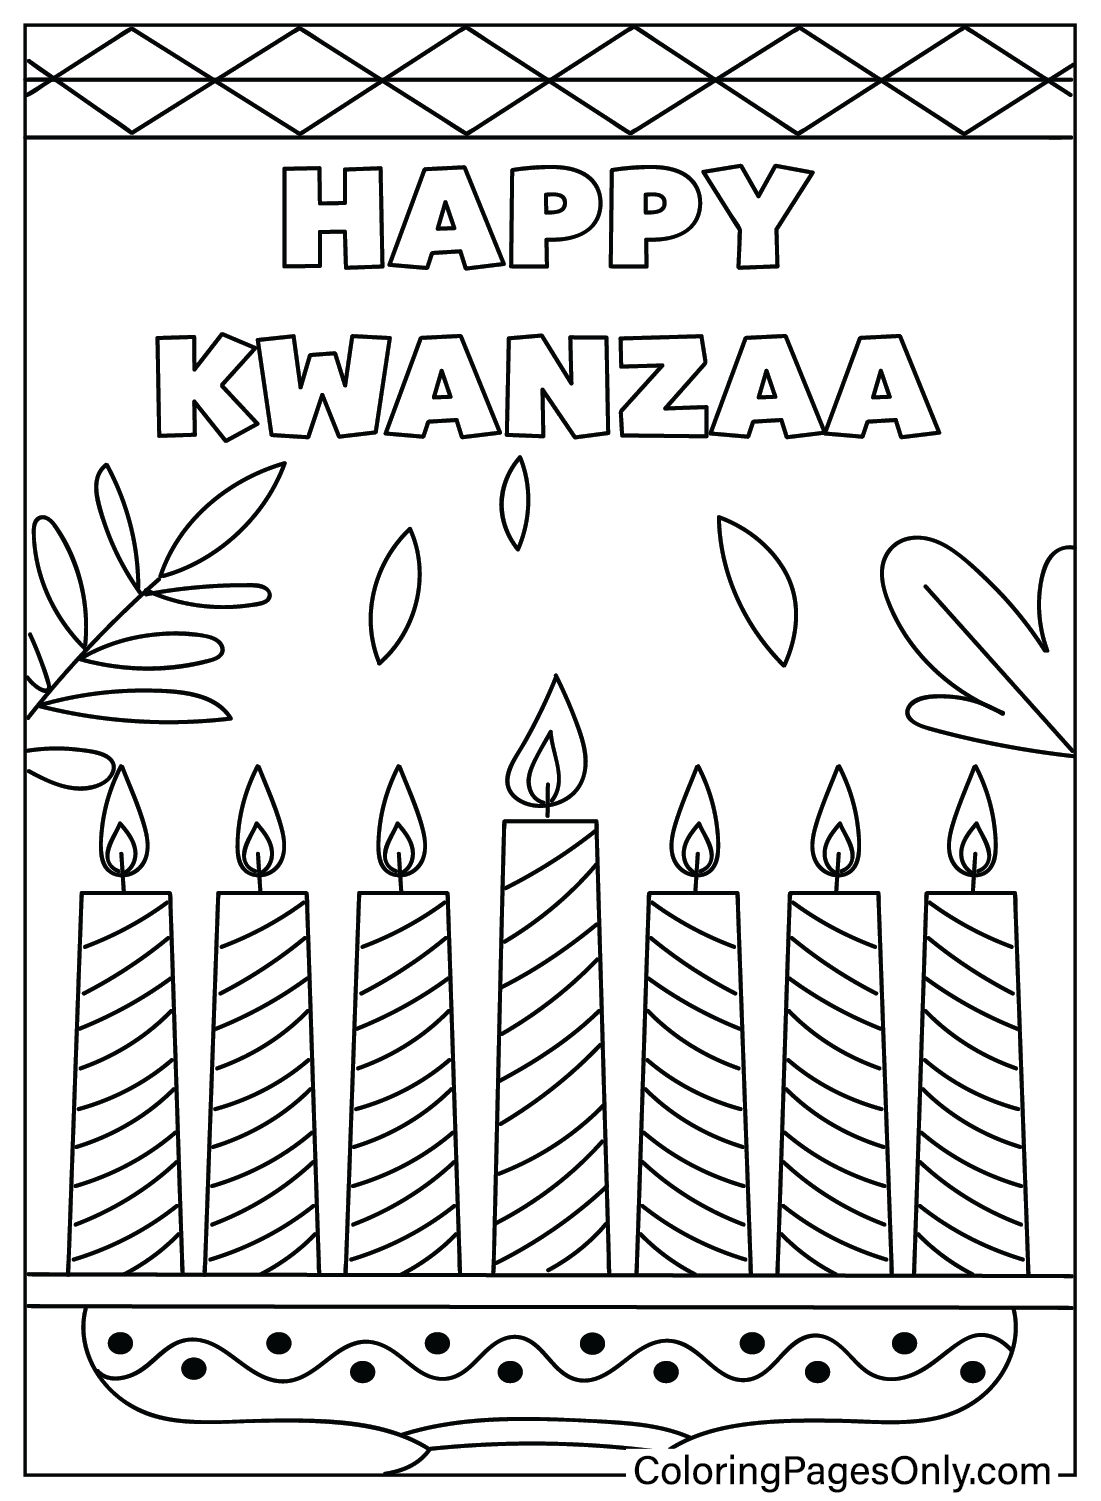 Kwanzaa kleurplaat Gratis printbaar vanuit Kwanzaa